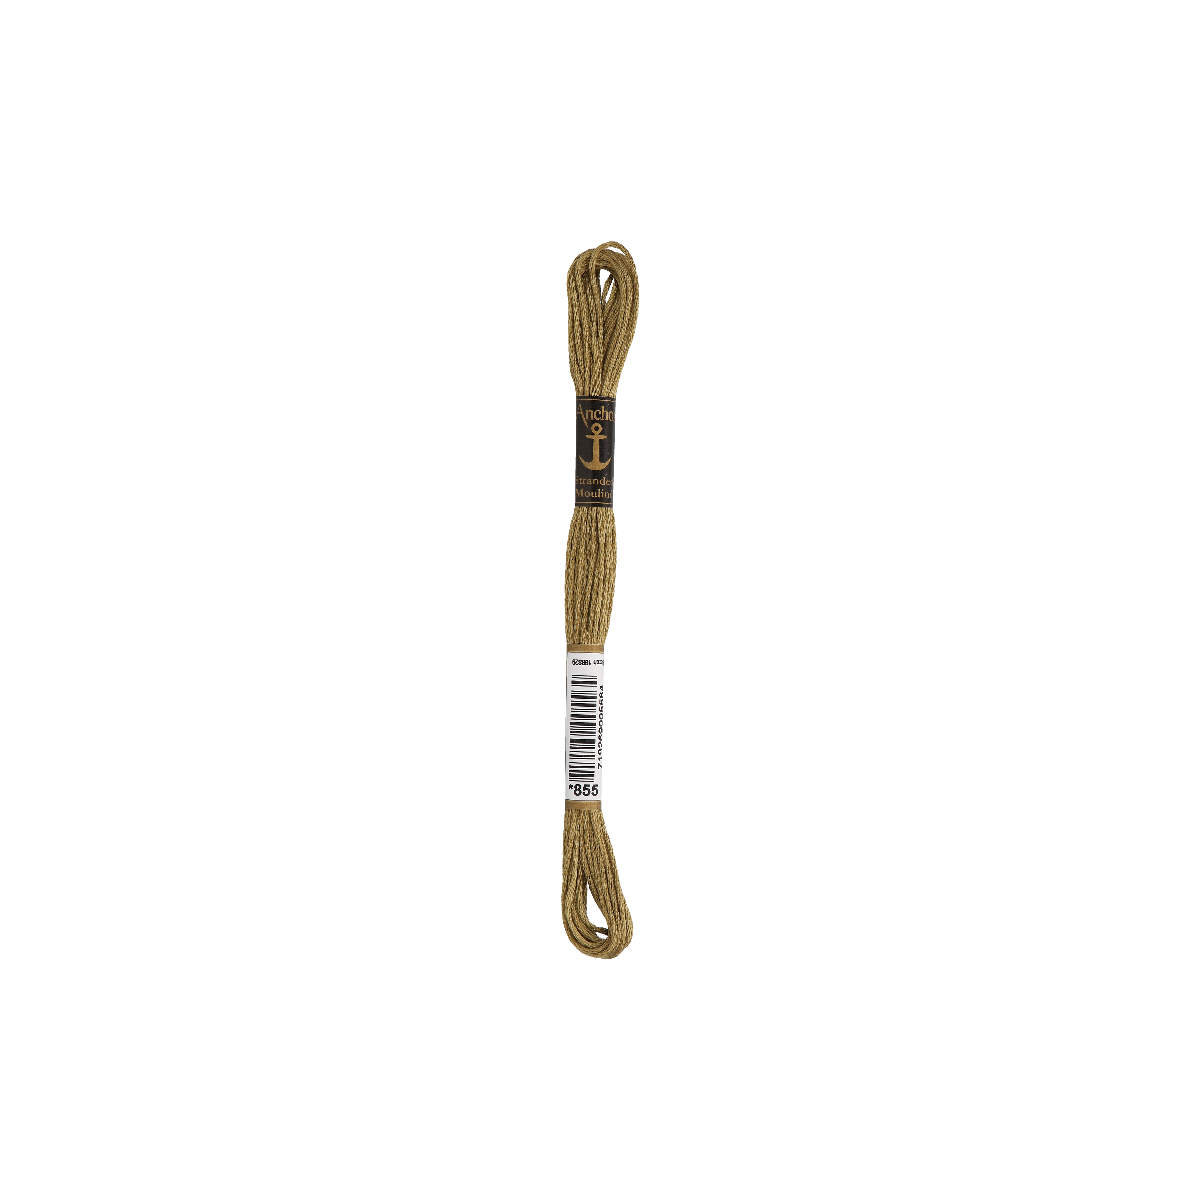 Anchor Sticktwist 8m, metallo, cotone, colore 855, 6 fili